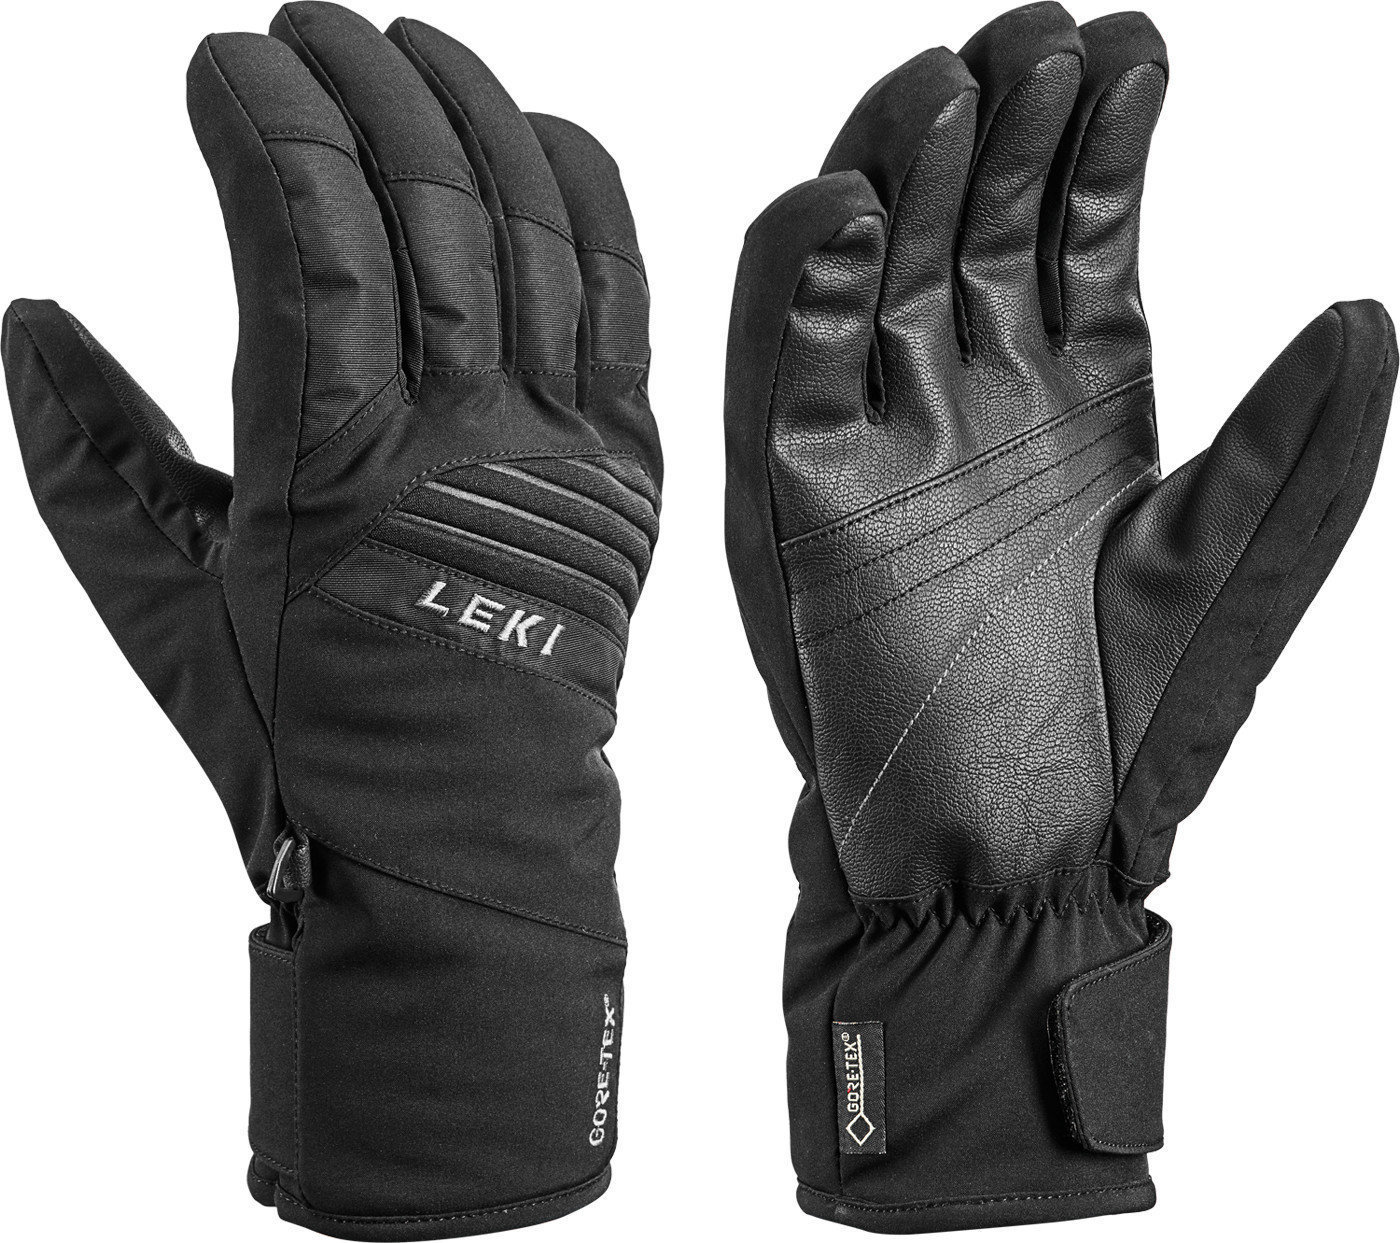 Smučarske rokavice Leki Space GTX Black 9,5 Smučarske rokavice